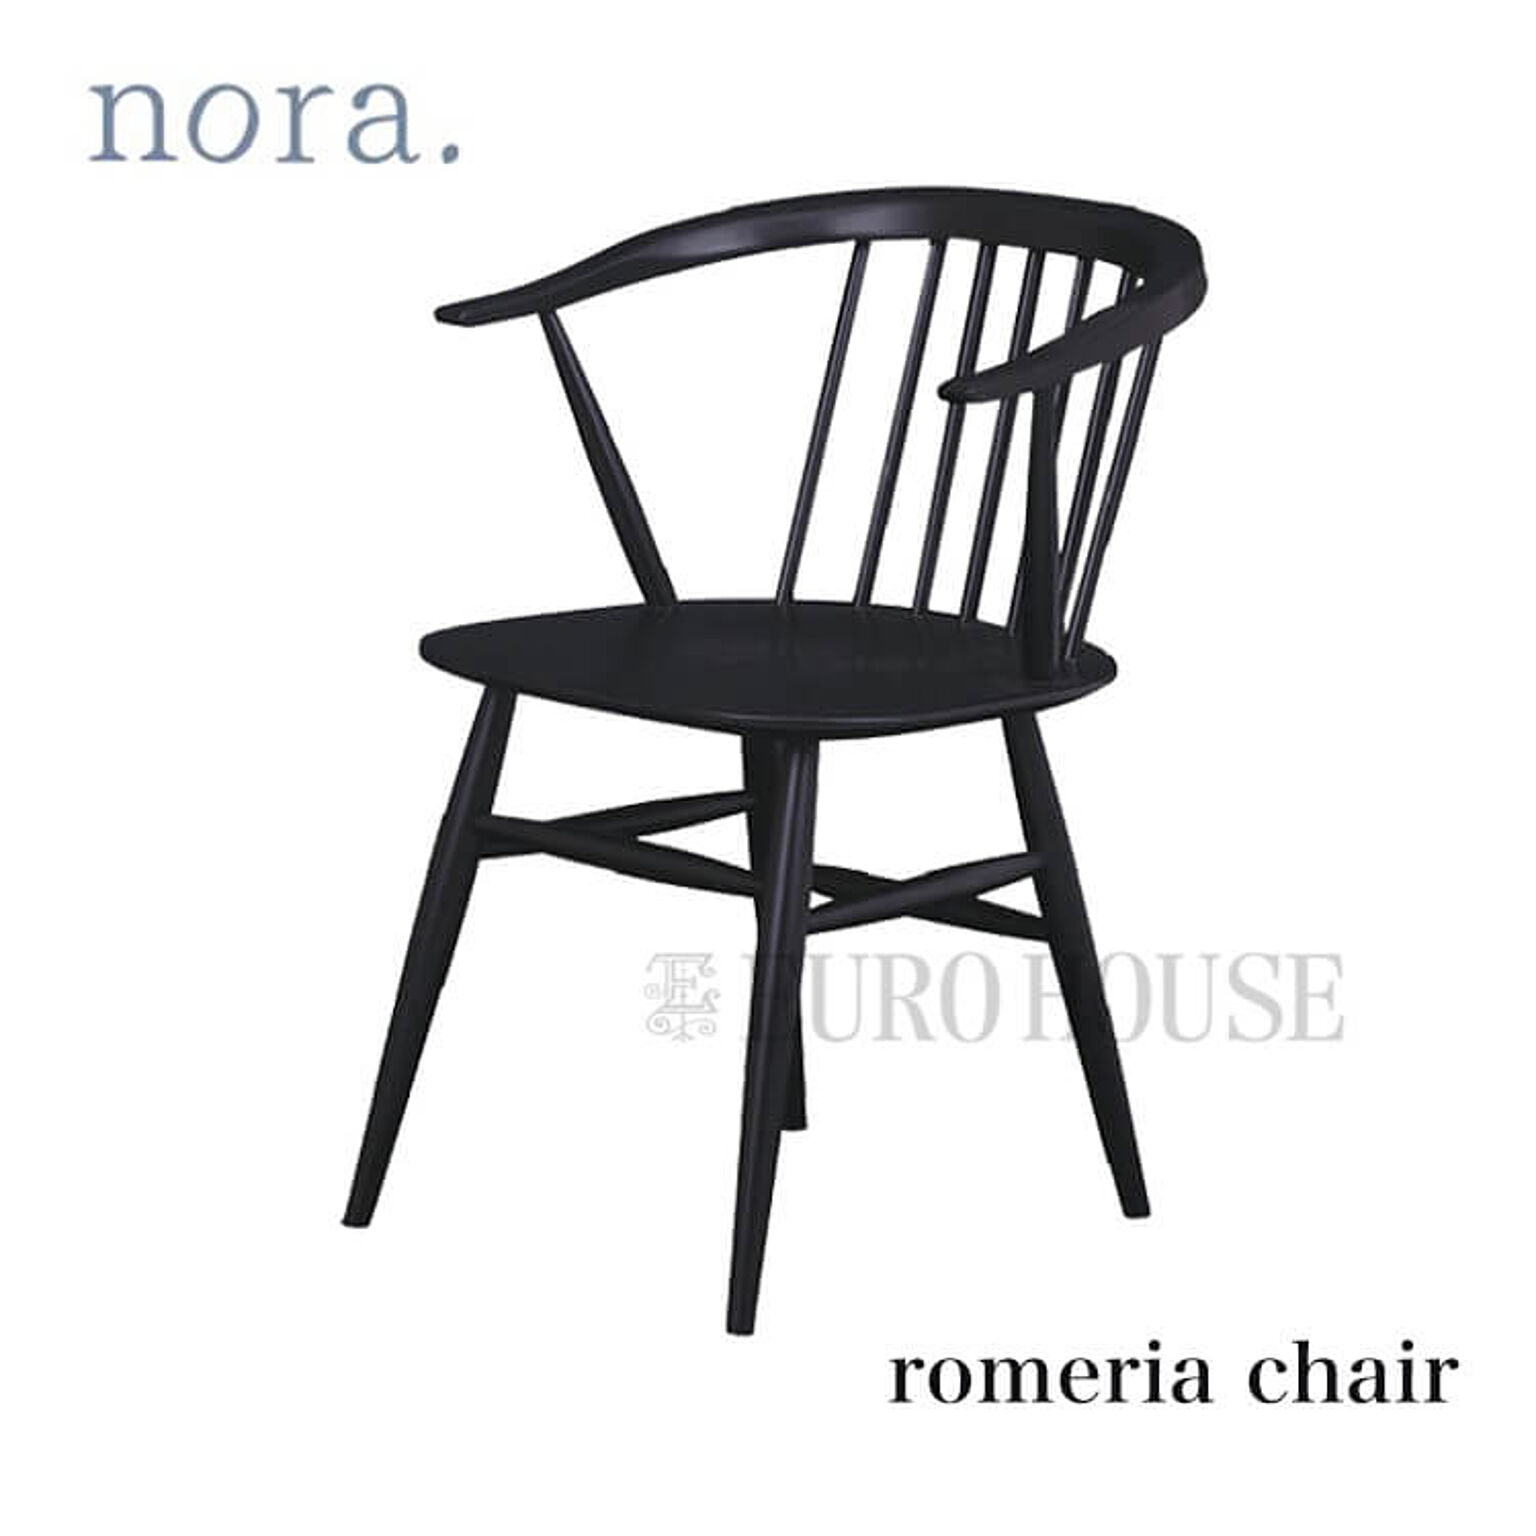  チェア ダイニングチェア Romeria ロメリア BK ブラック バーチ材 ナチュラル nora ノラ nora. 関家具 